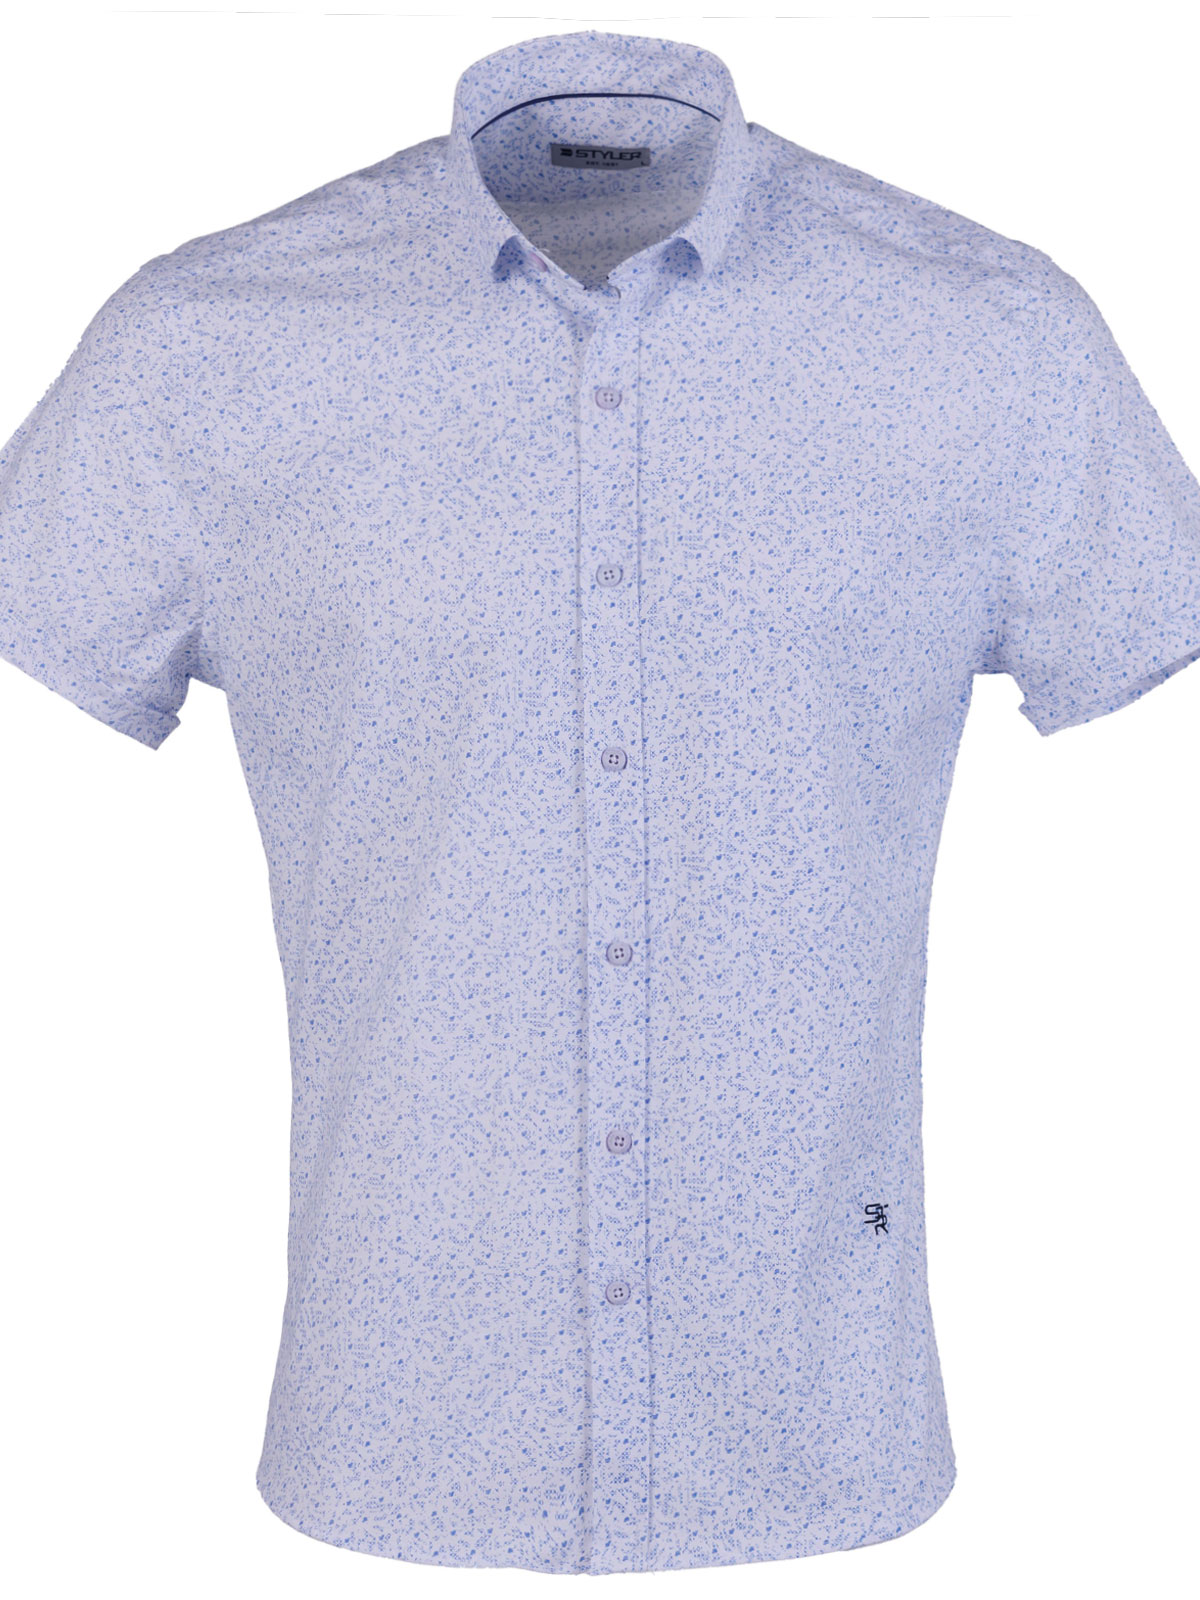 Риза в бяло със ситни сини фигури - 80231 69.00 лв img1